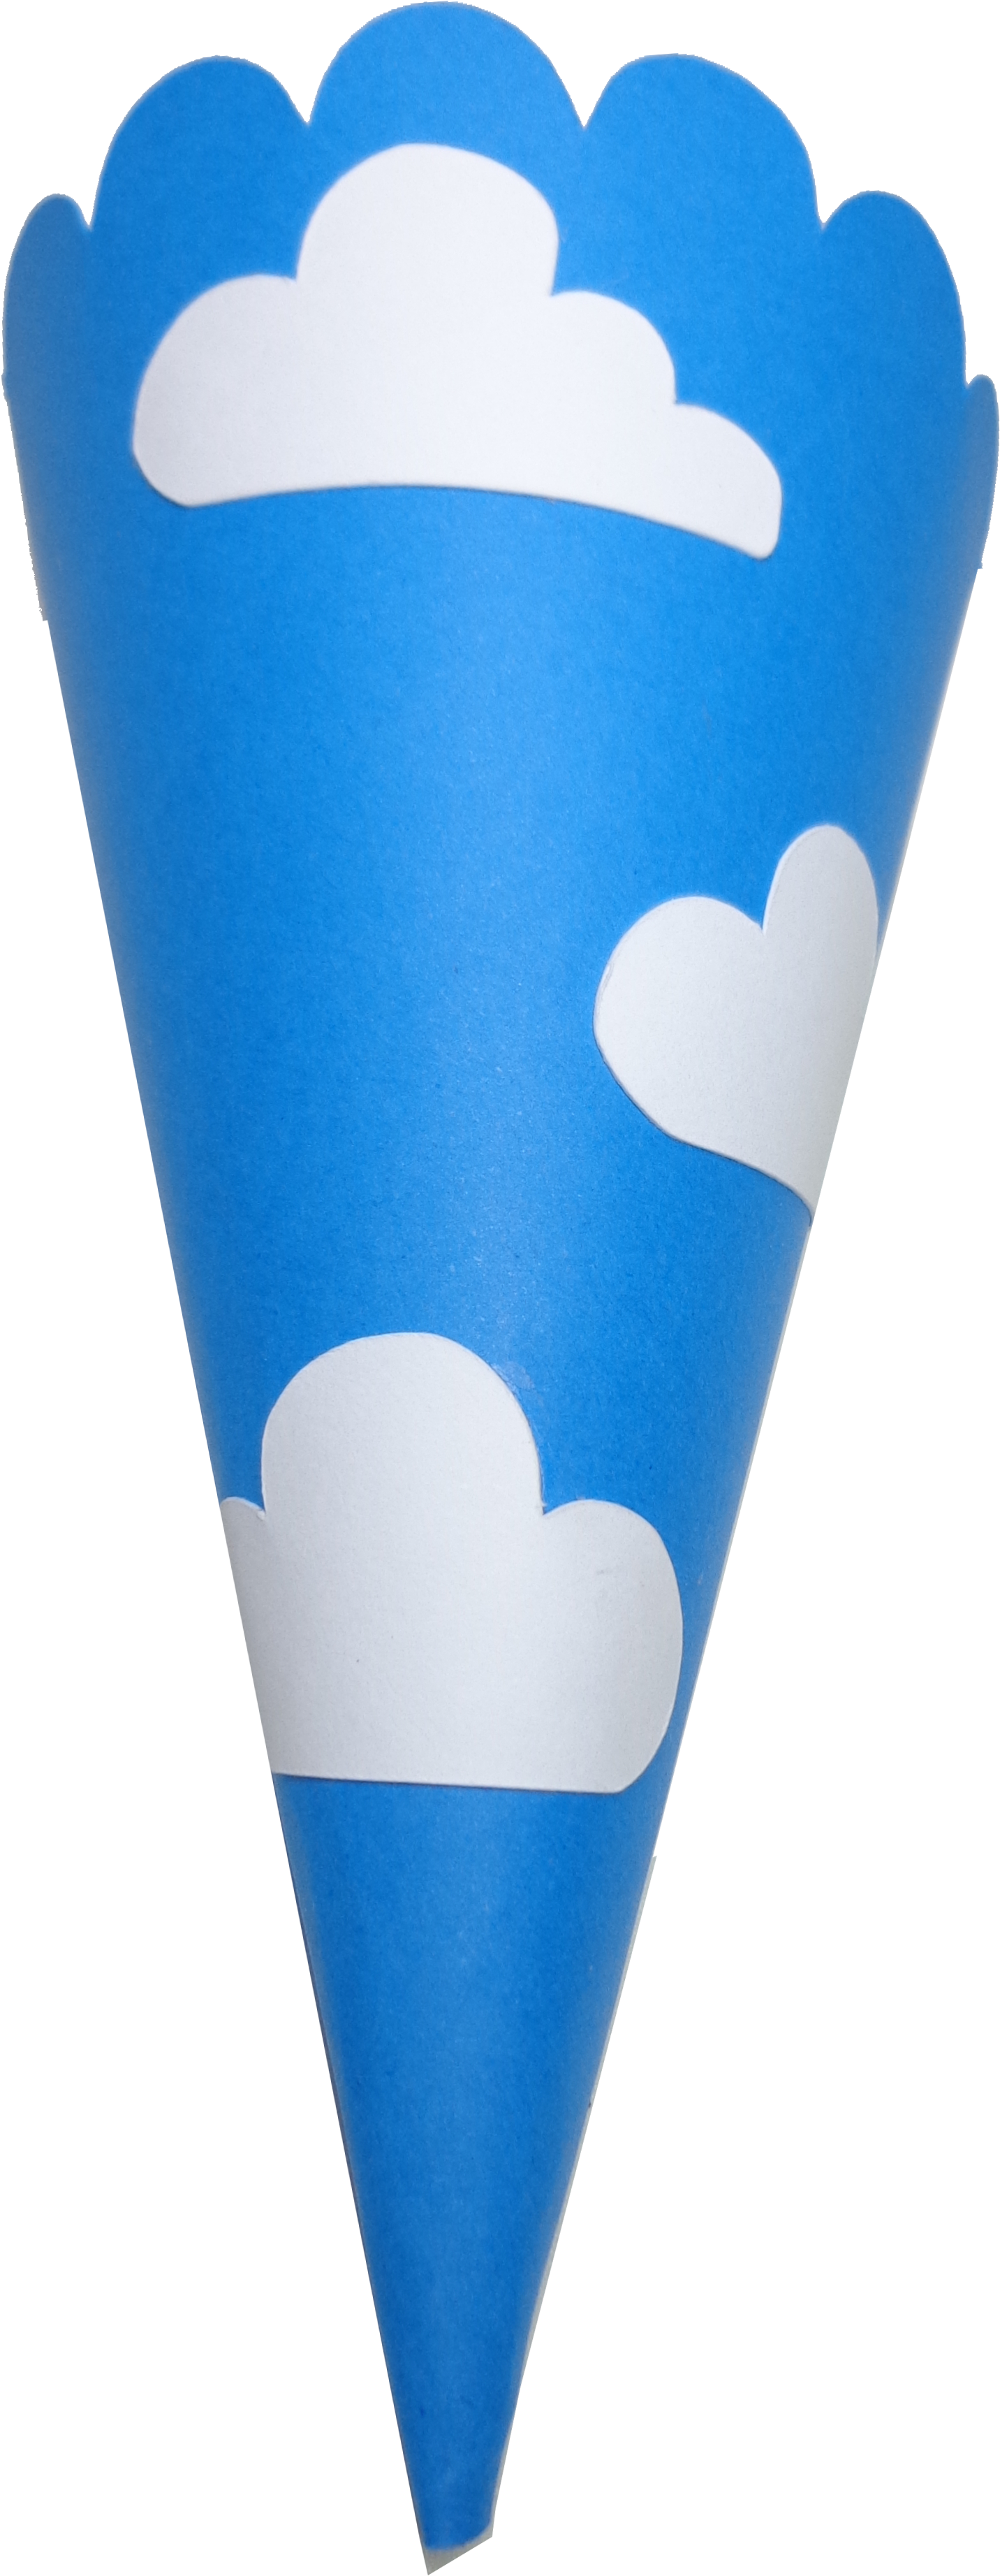 Cone Pequeno Príncipe Mamãe Papel - Ice Cream Cone (2592x4608)